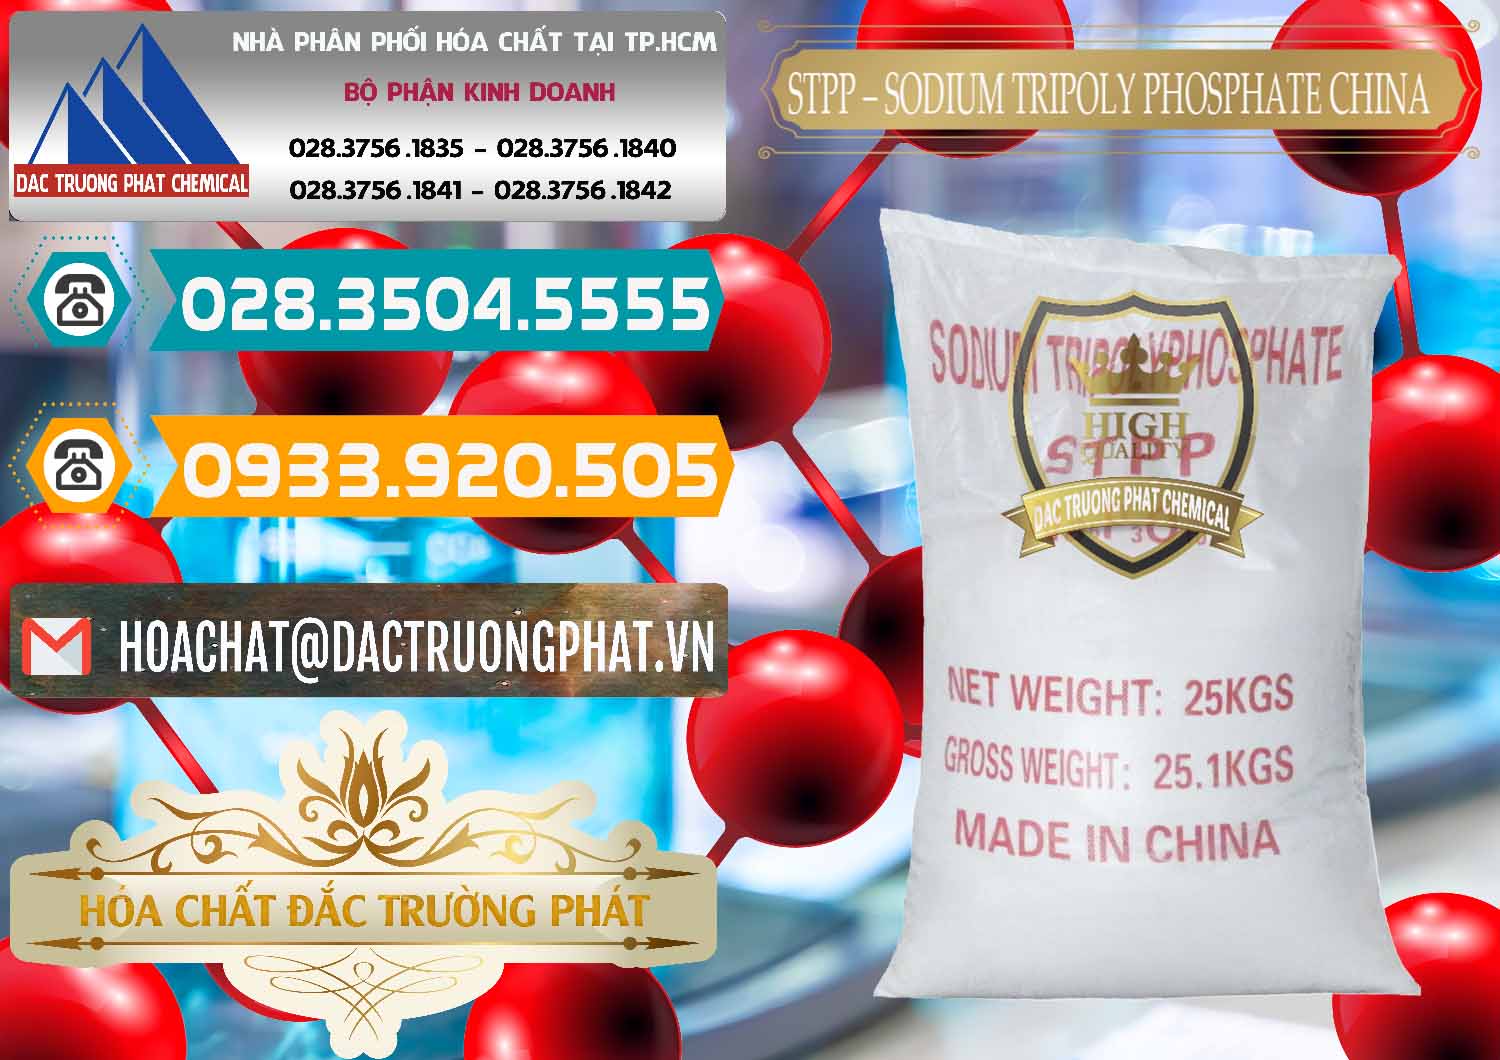 Cty chuyên cung cấp _ bán Sodium Tripoly Phosphate - STPP 96% Chữ Đỏ Trung Quốc China - 0155 - Công ty chuyên kinh doanh _ cung cấp hóa chất tại TP.HCM - congtyhoachat.vn